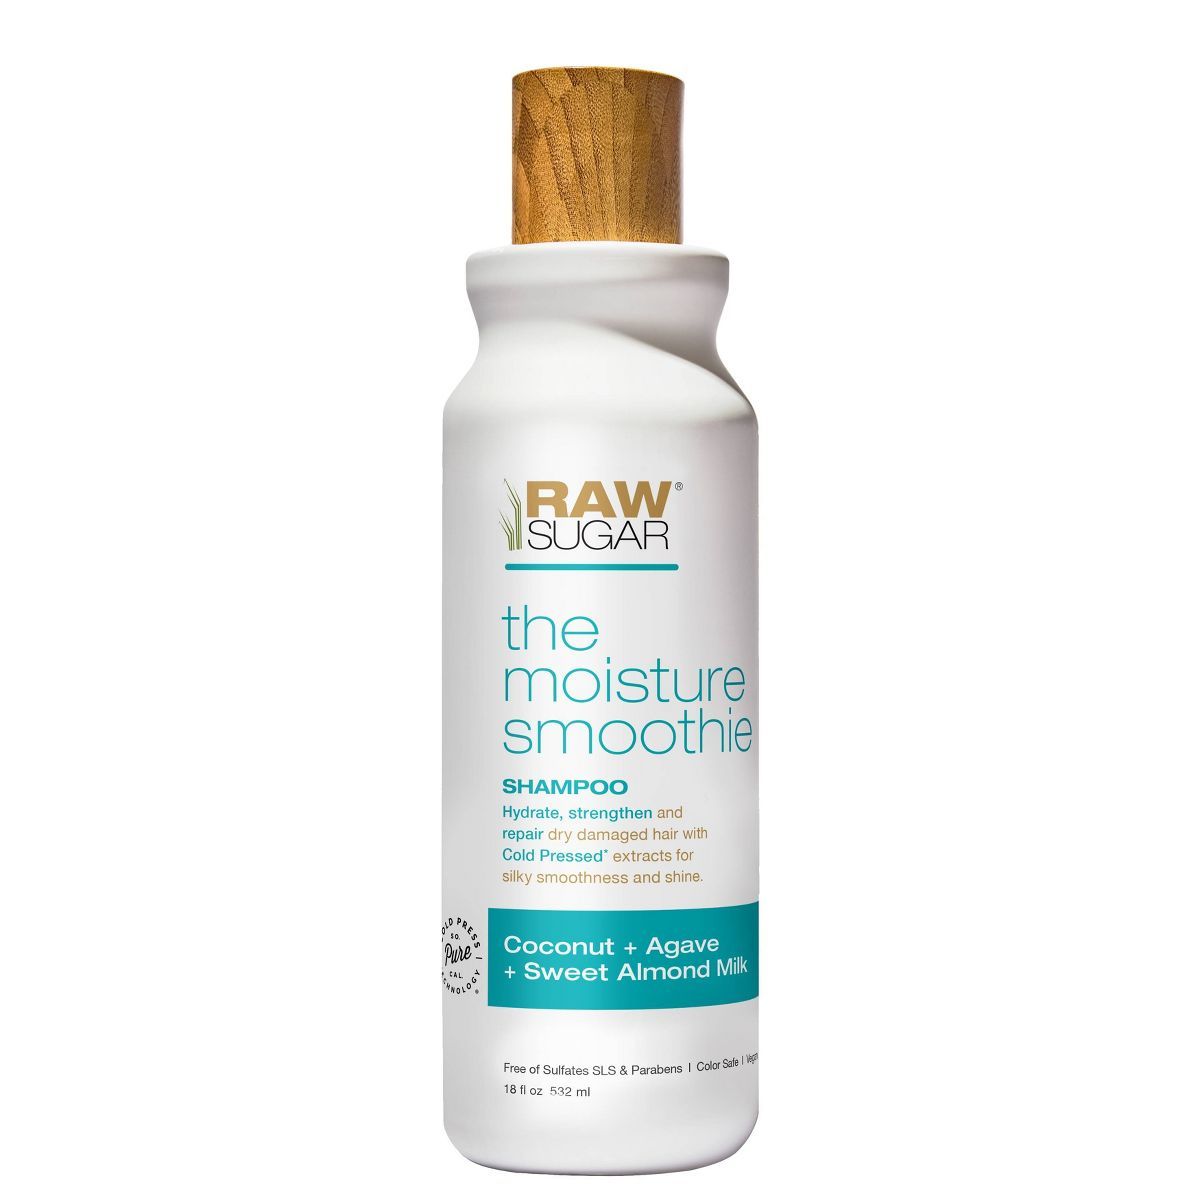 Raw Sugar Shampoo Coconut + Agave + Sweet Almond Milk - 18 fl oz | Target